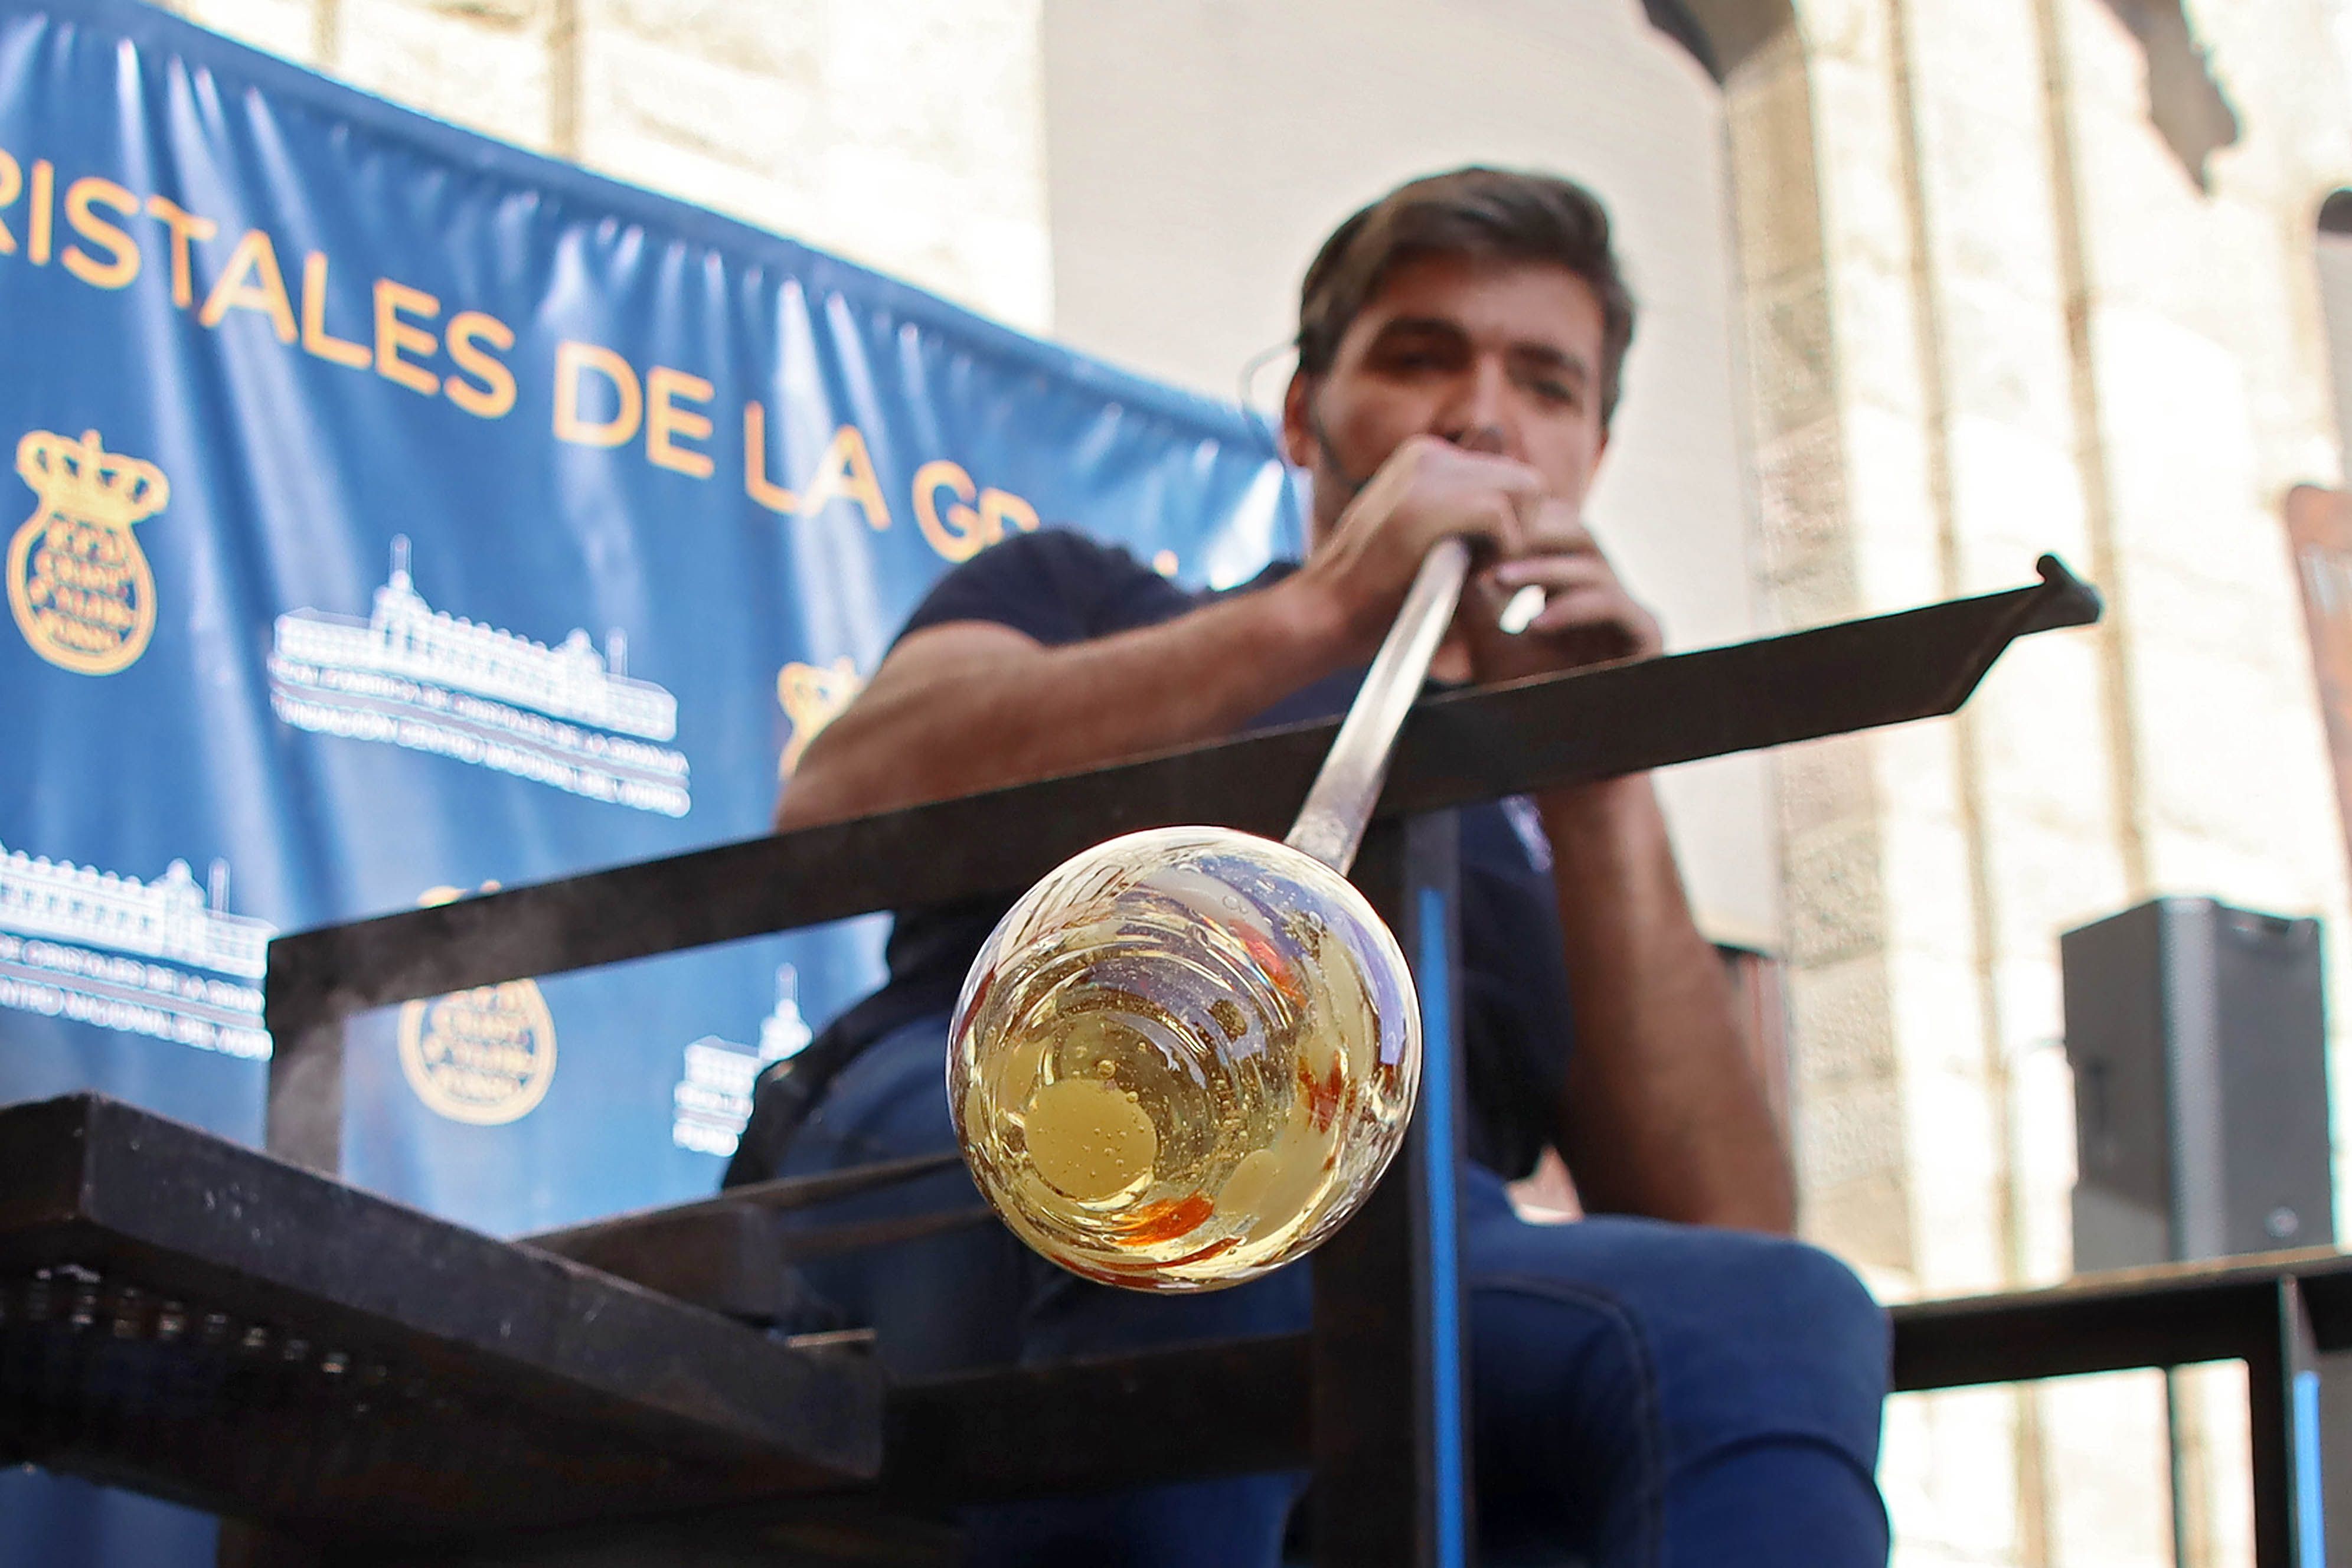 Taller de soplado de vidrio a los pies de la Catedral realizado por el maestro soplador Diego Rodríguez Blanco | Peio García (ICAL)